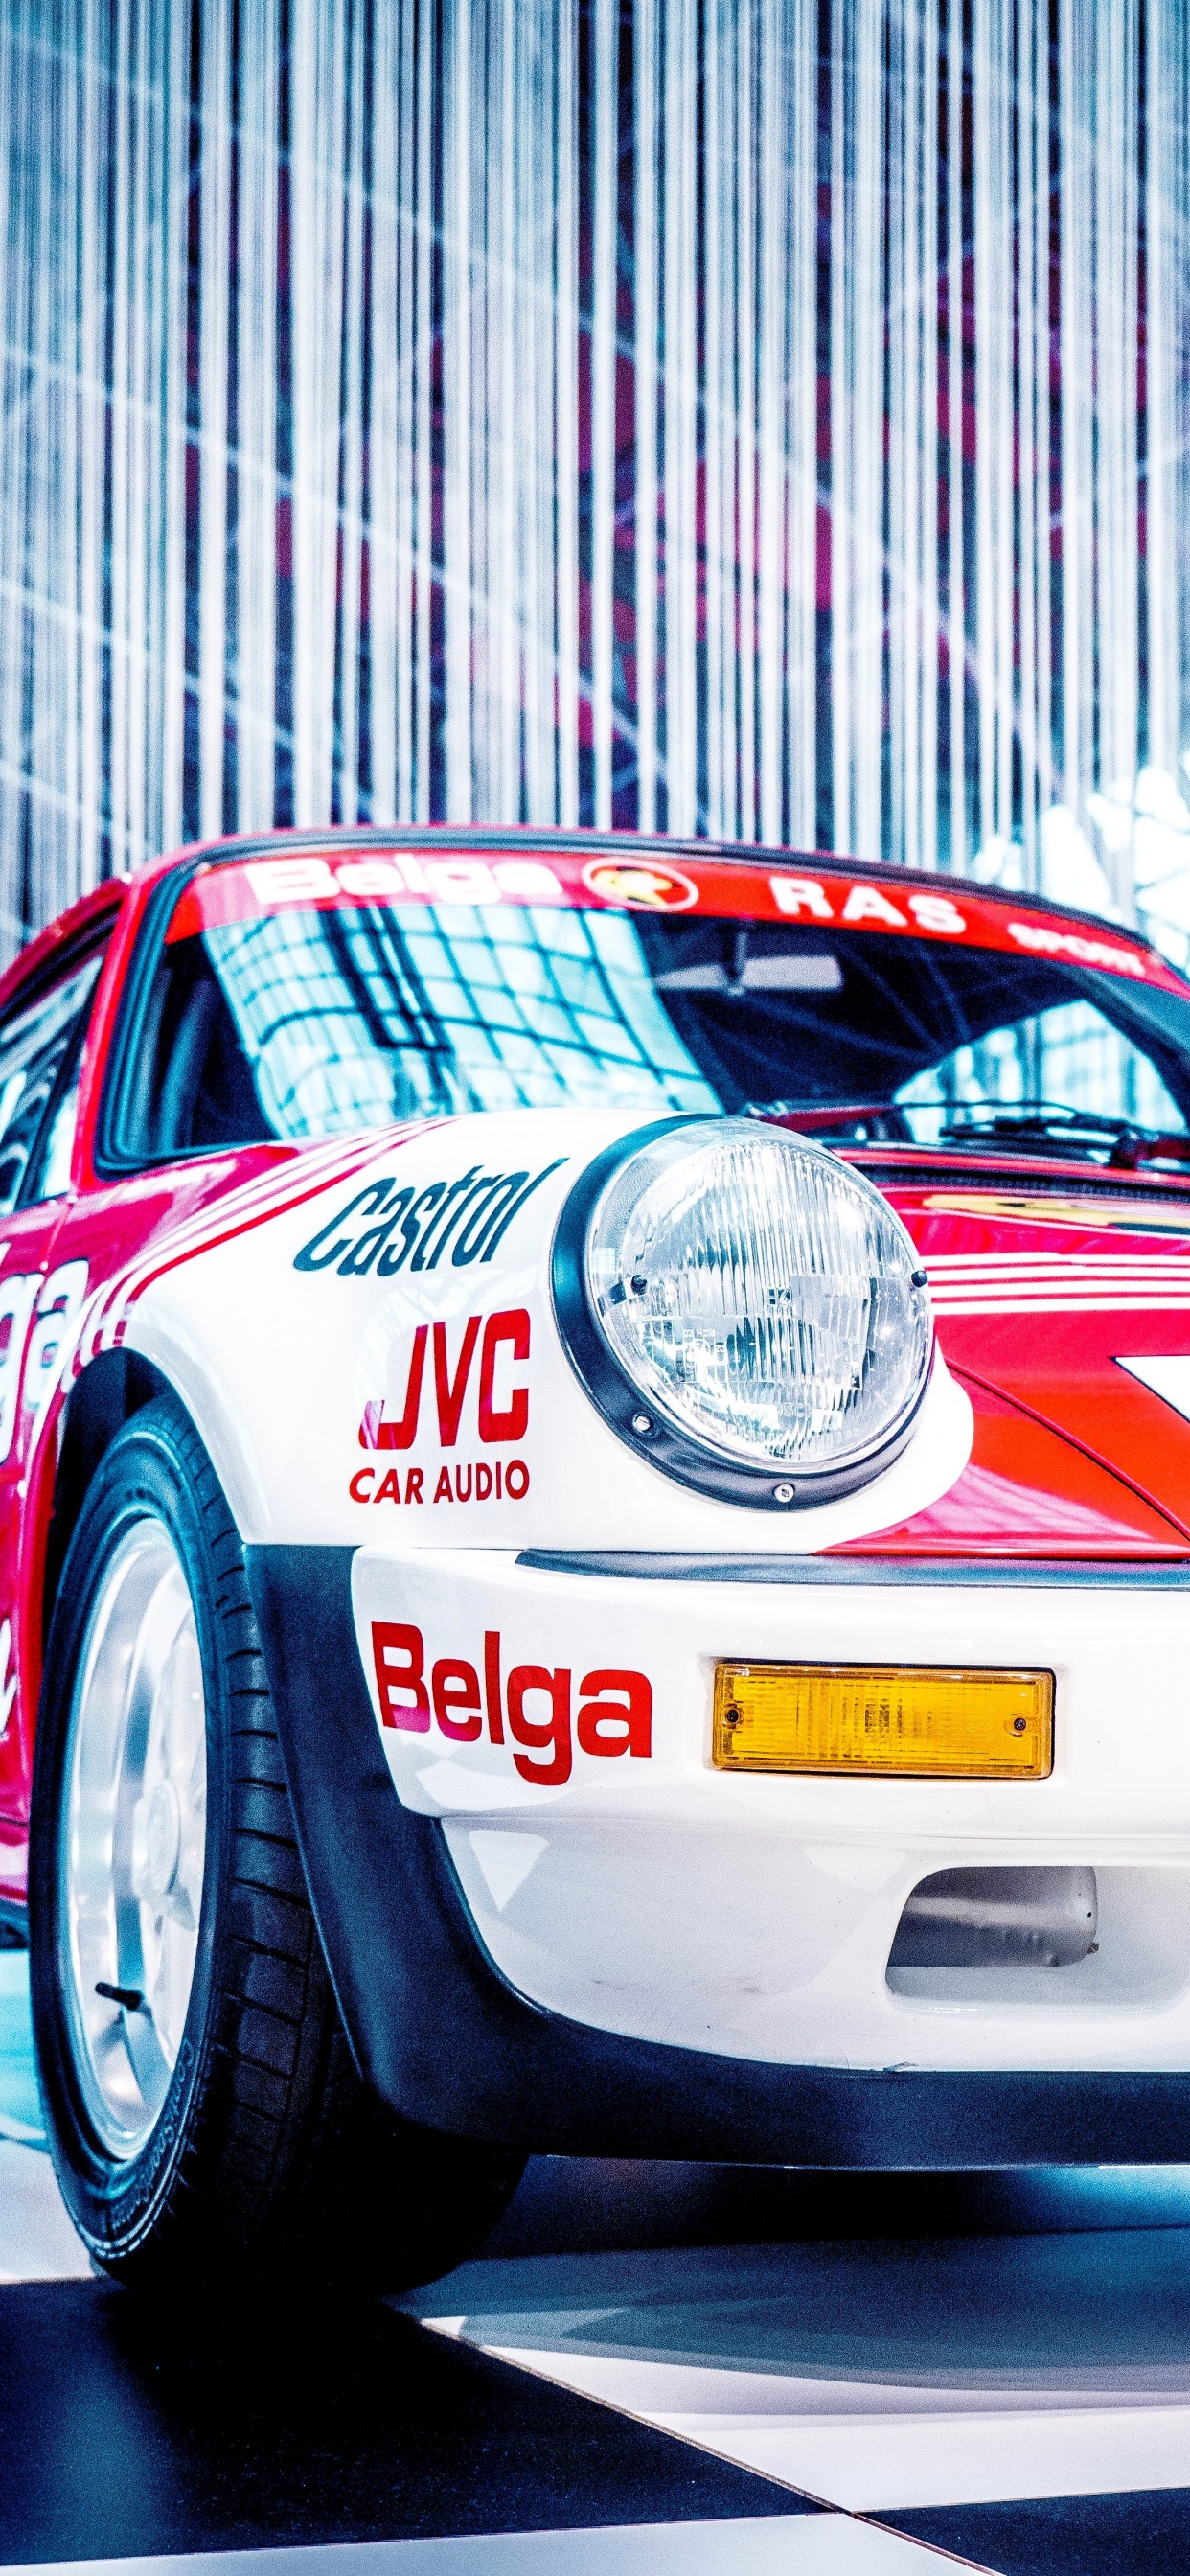 Porsche 911 Blanco y Rojo. Wallpaper in 1242x2688 Resolution